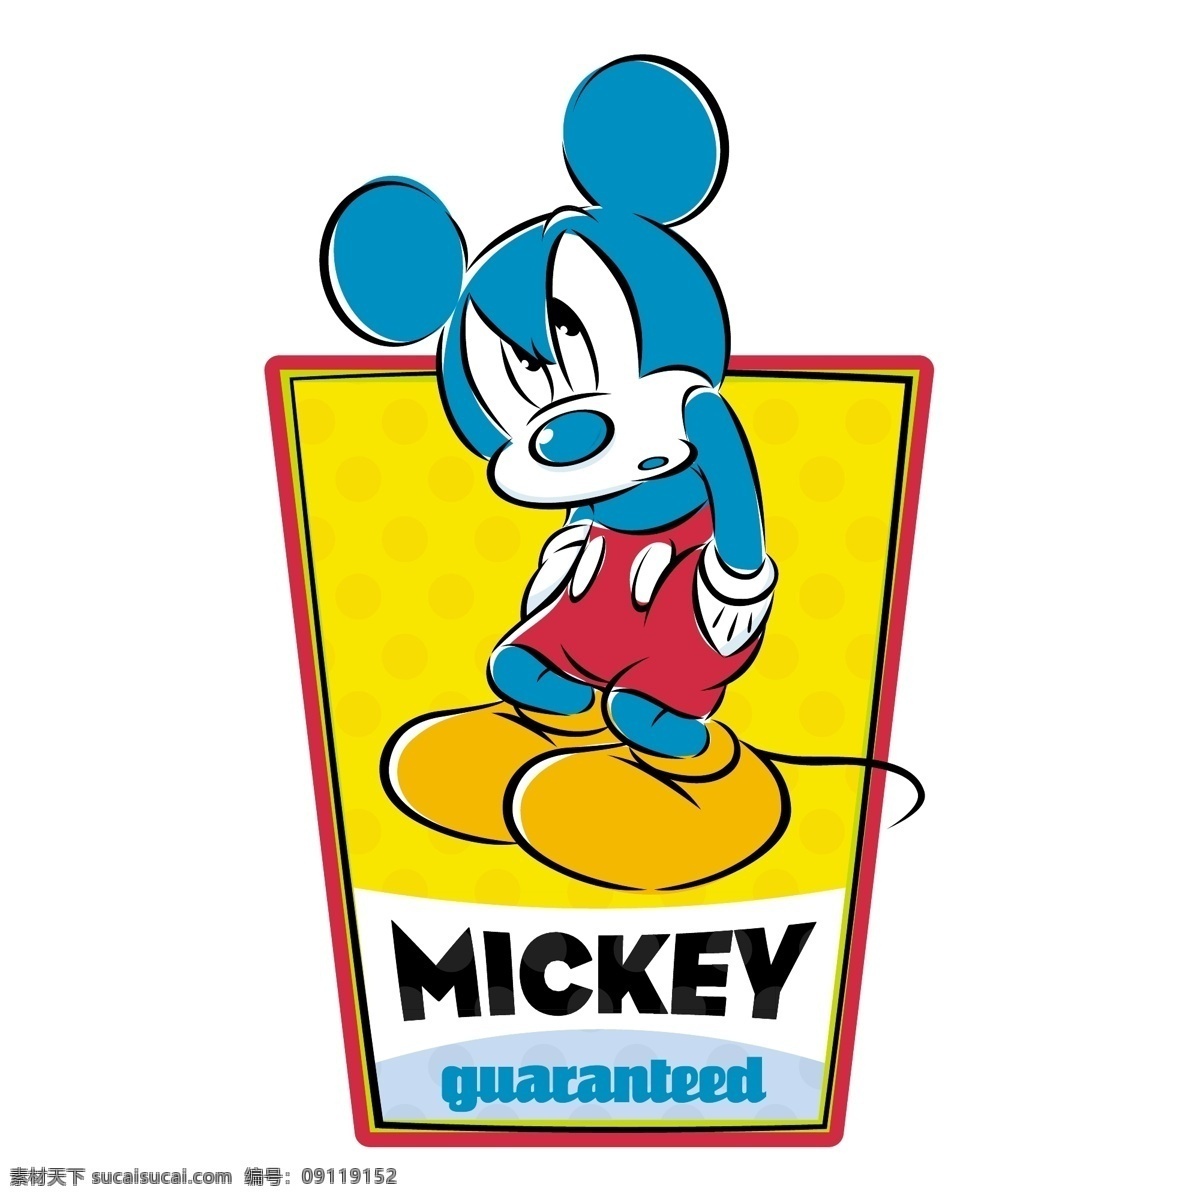 米奇 老鼠 标识 公司 免费 品牌 品牌标识 商标 矢量标志下载 免费矢量标识 矢量 psd源文件 logo设计